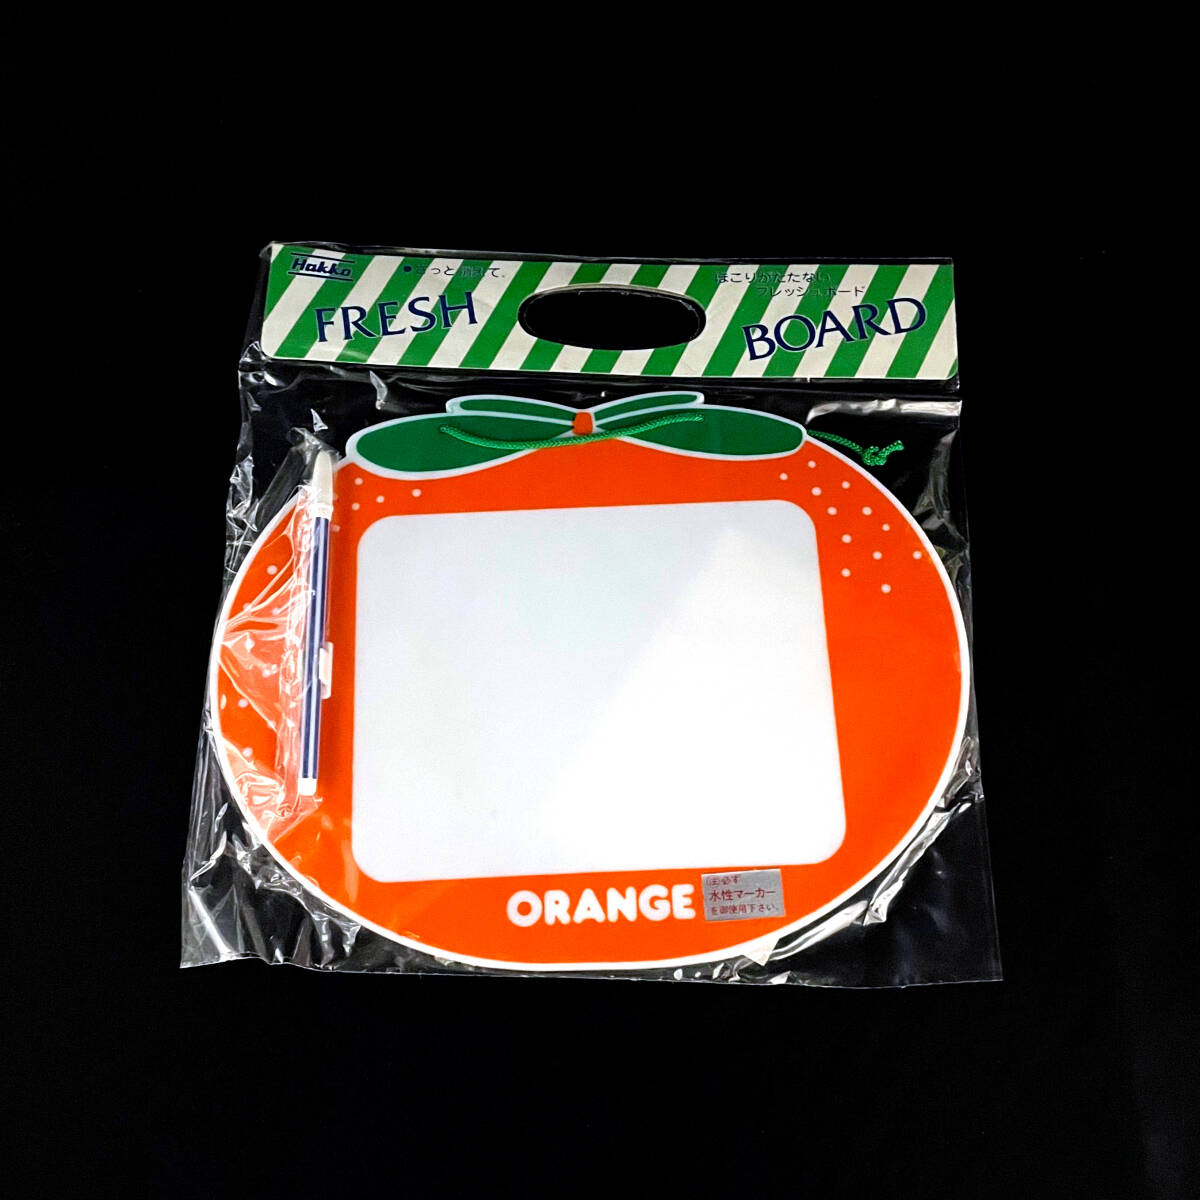  подлинная вещь! не использовался товар!FRESH BOARD белая доска ( помидор * тыква * orange )3 вид много продажа комплектом / Showa Retro / pop /Hakko